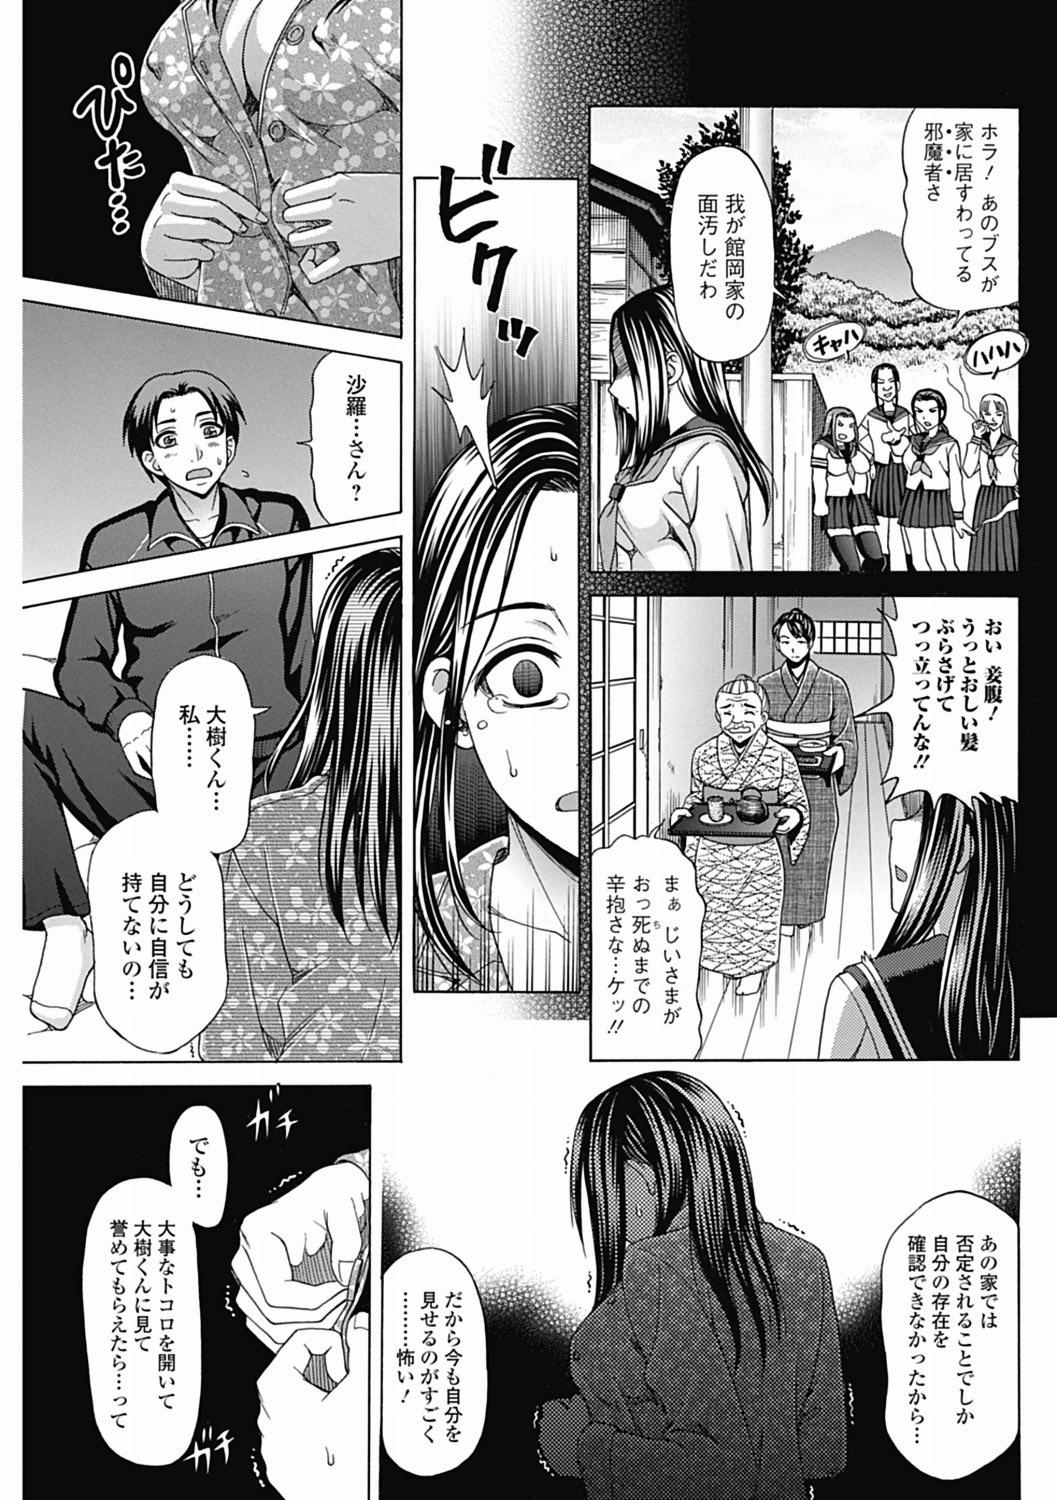 Bishoujo Kakumei KIWAME 2012-04 Vol.19 133